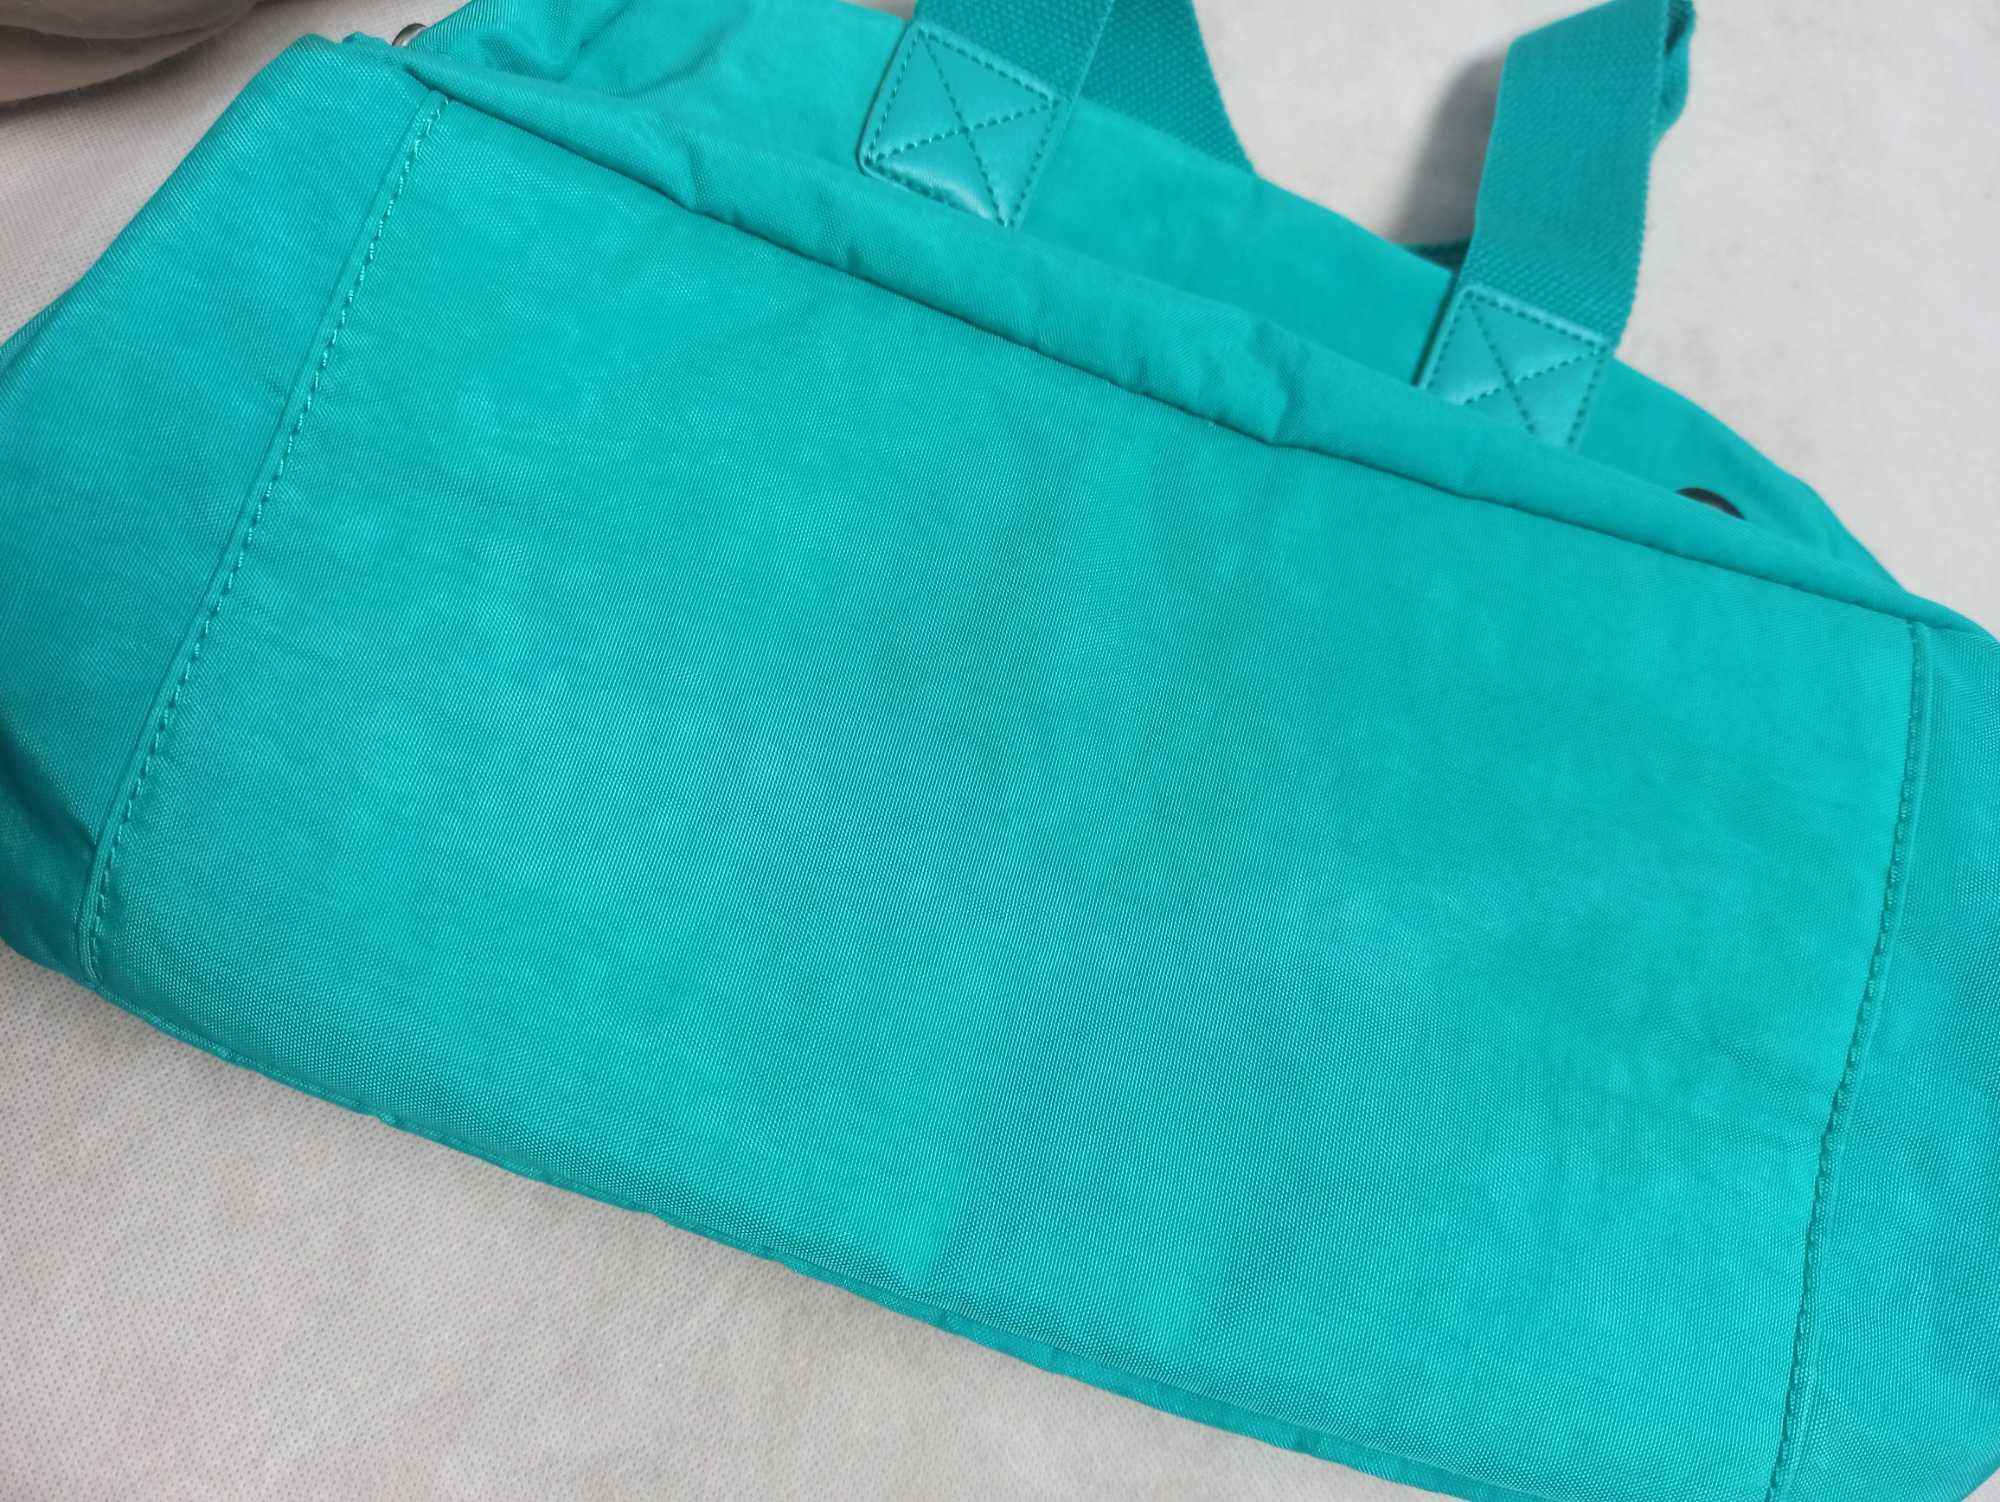 Multipocket Archive Japanese Style Kipling Blue Vintage Bag Torebka